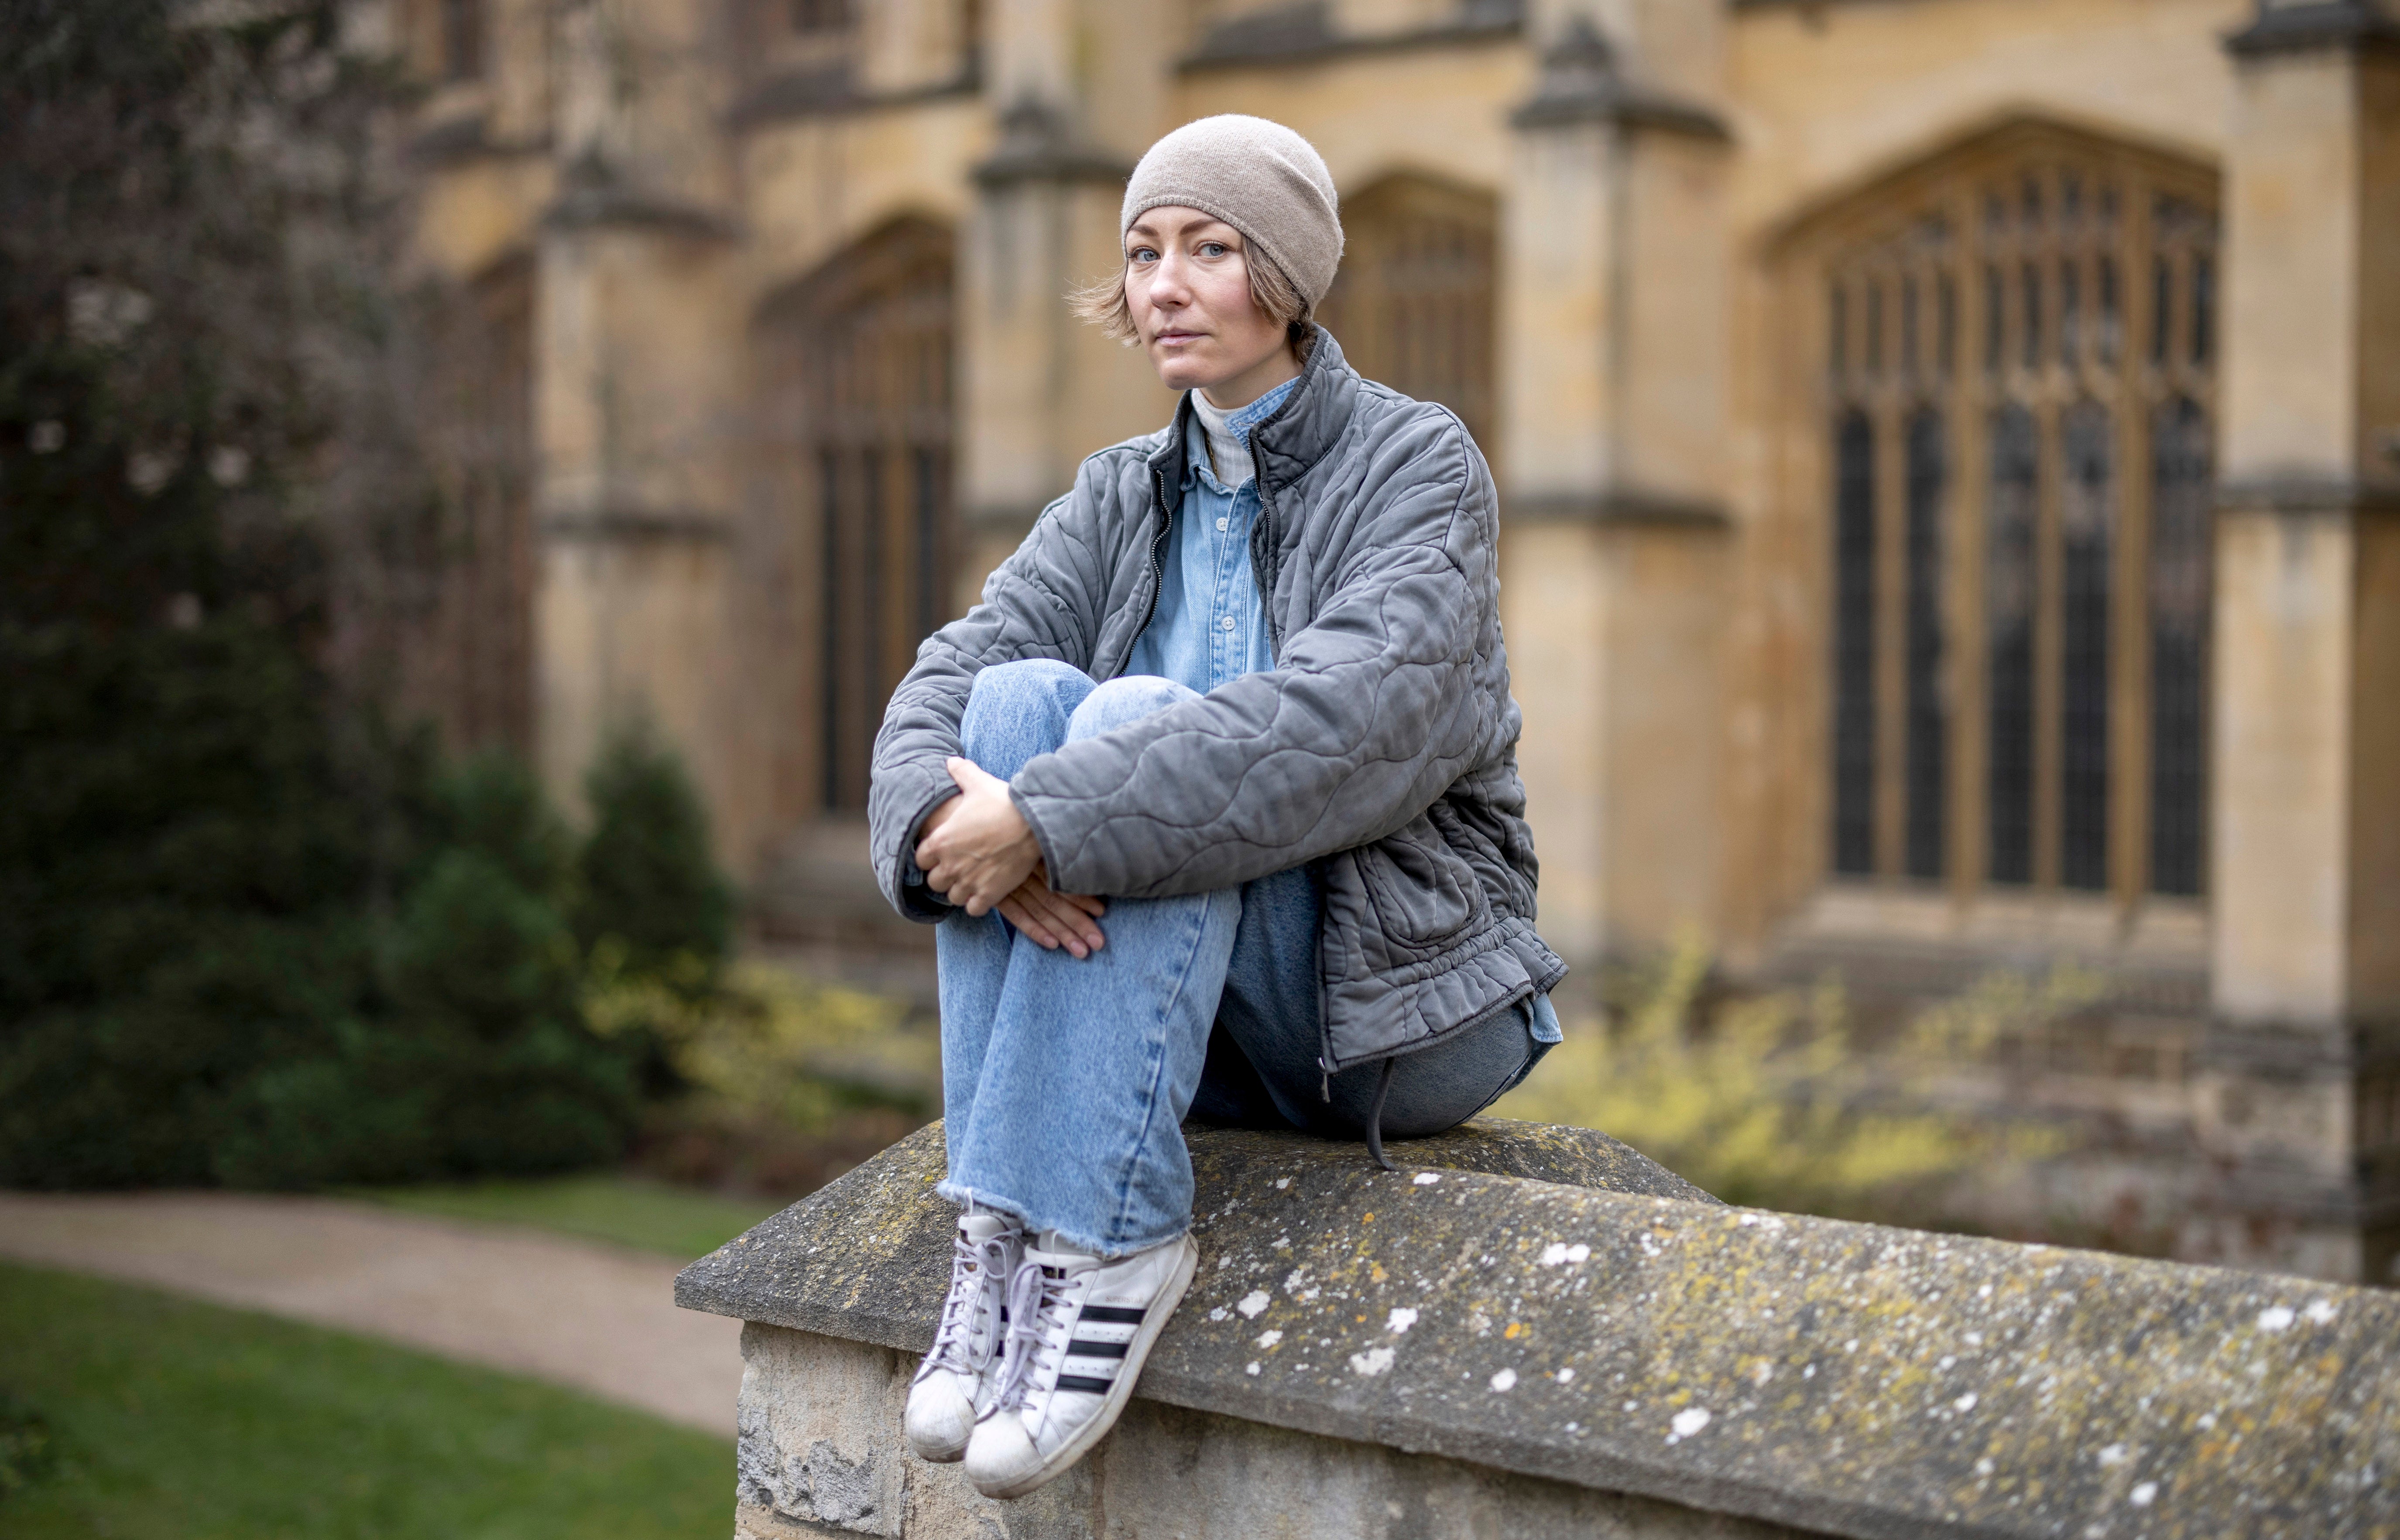 Daria Koltsova poses at an Oxford University campus